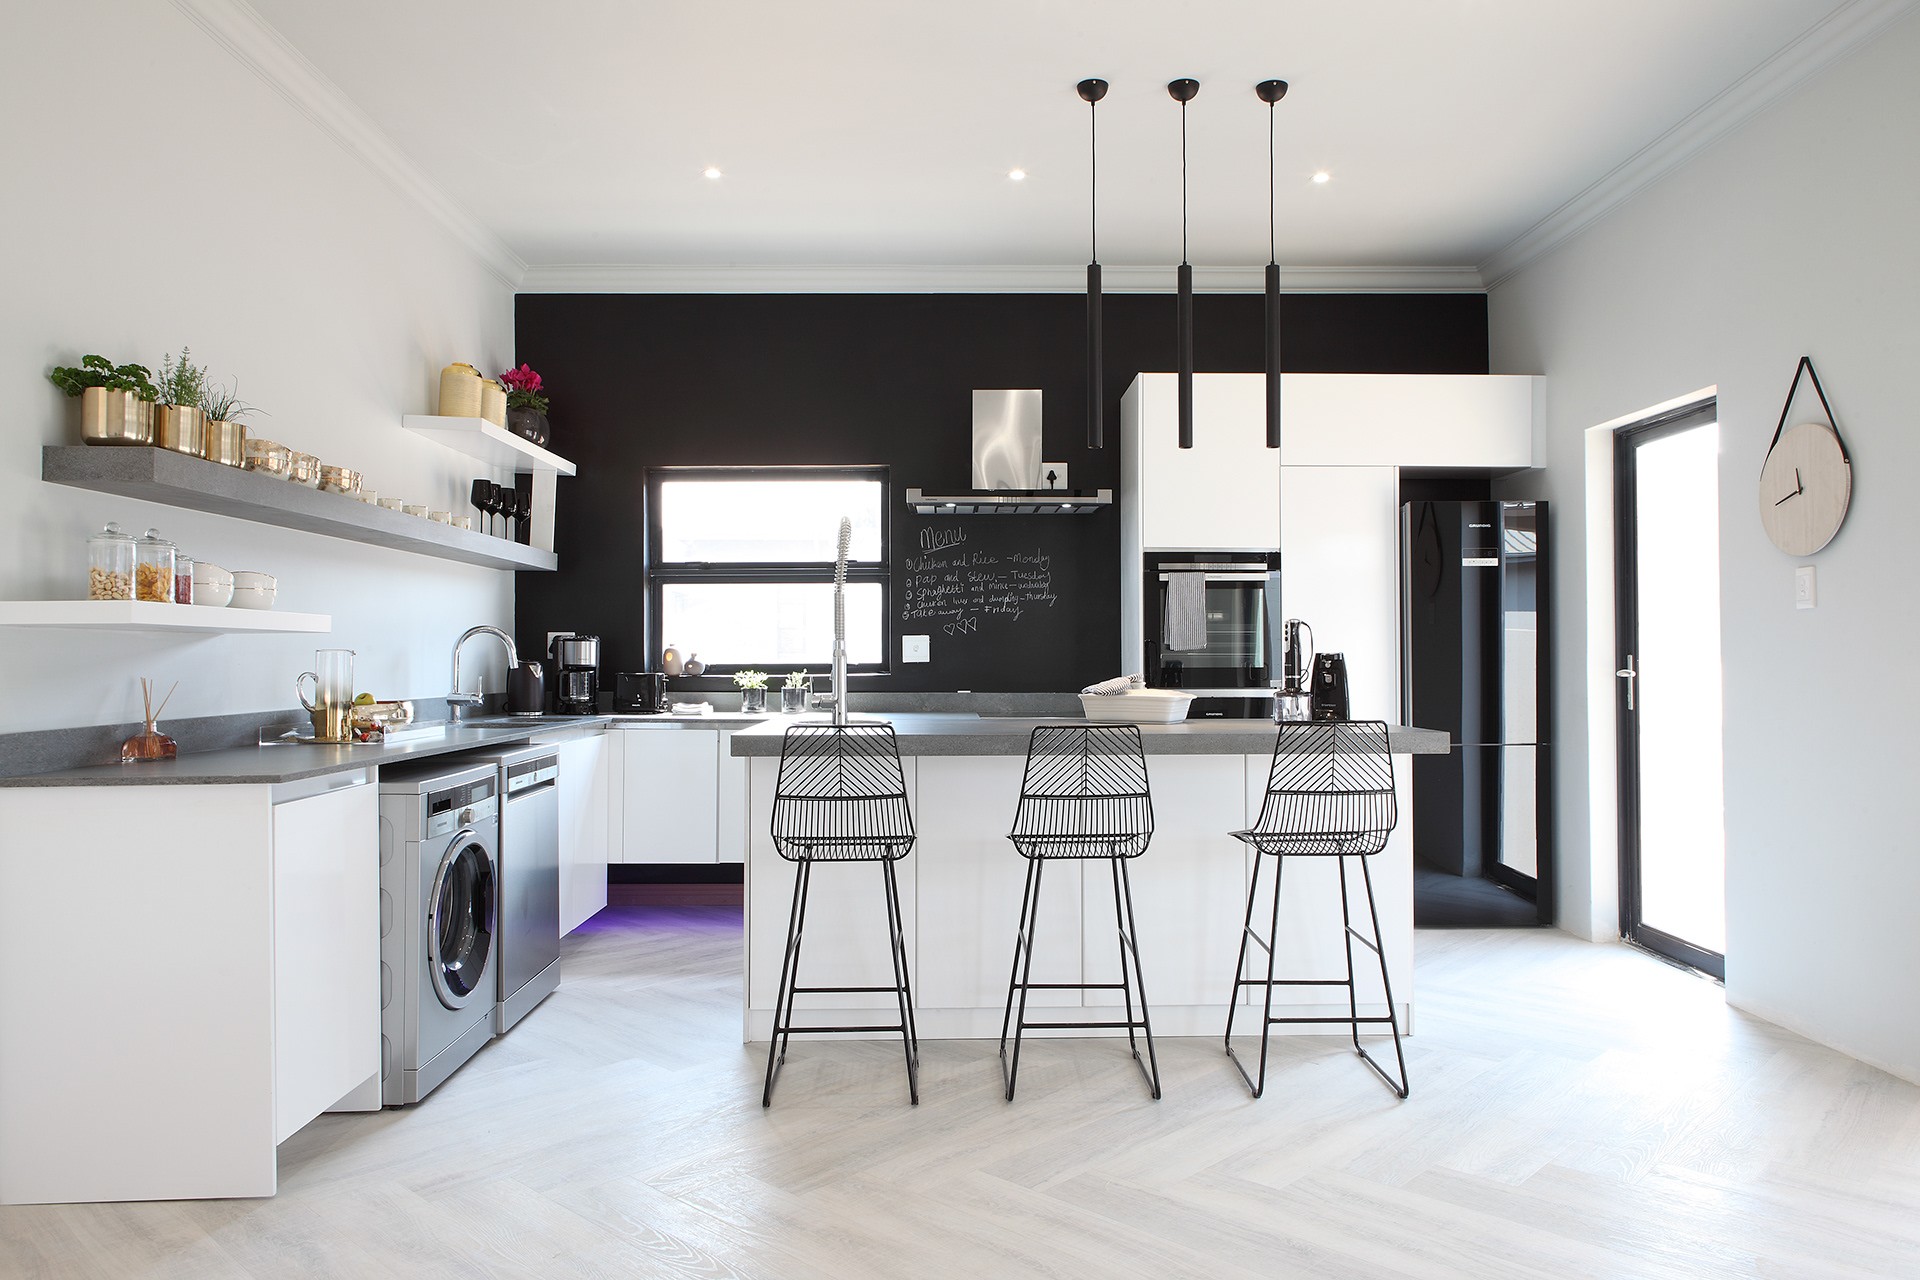 Décor do dia: cozinha com parede lousa e decoração em preto e branco (Foto: Divulgação)